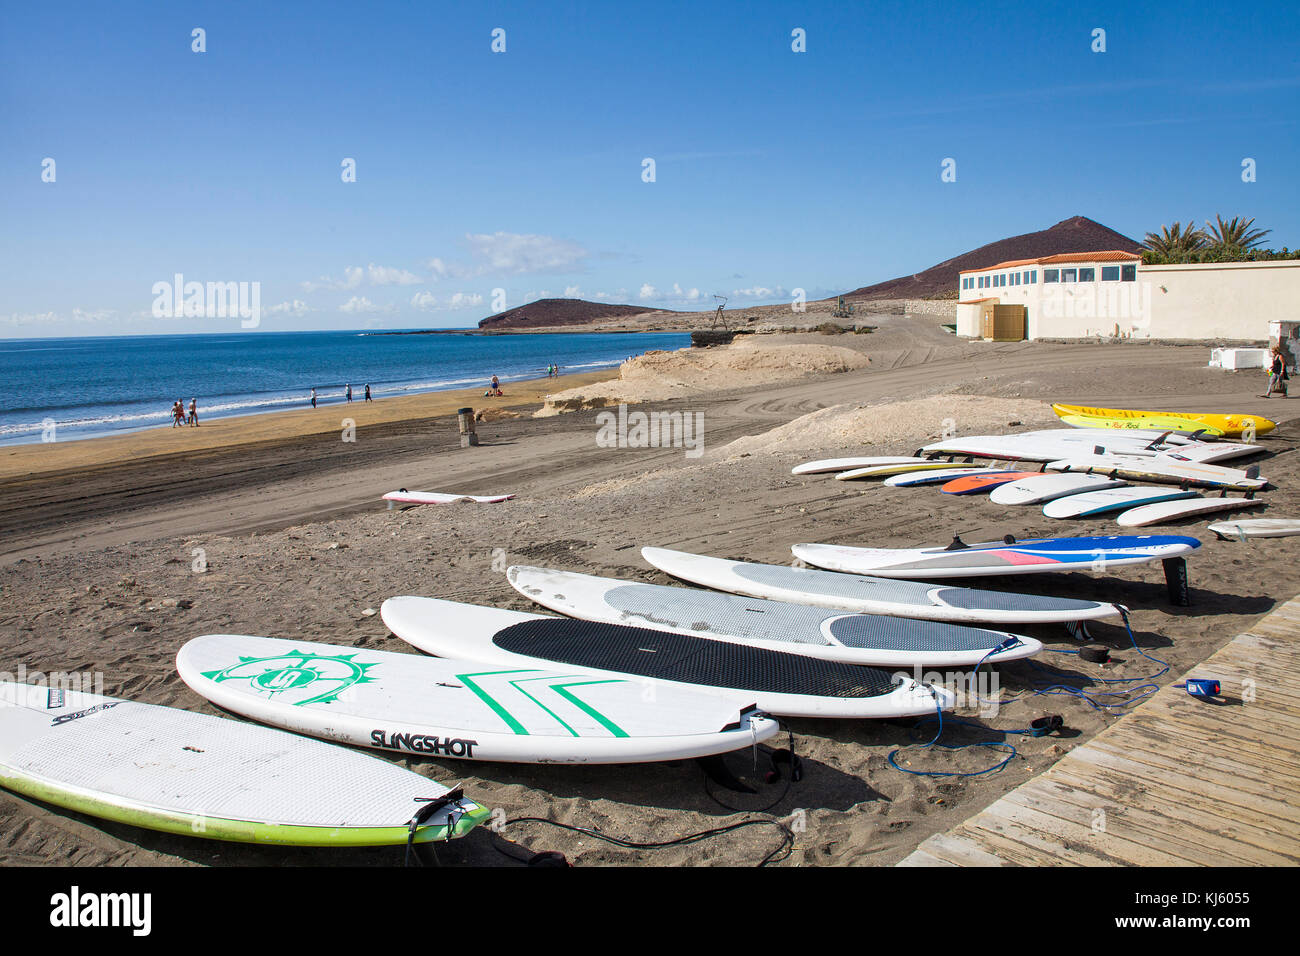 Tavole da surf in spiaggia di El Medano, una popolare destinazione surfista sull'isola di Tenerife, Isole canarie, Spagna Foto Stock